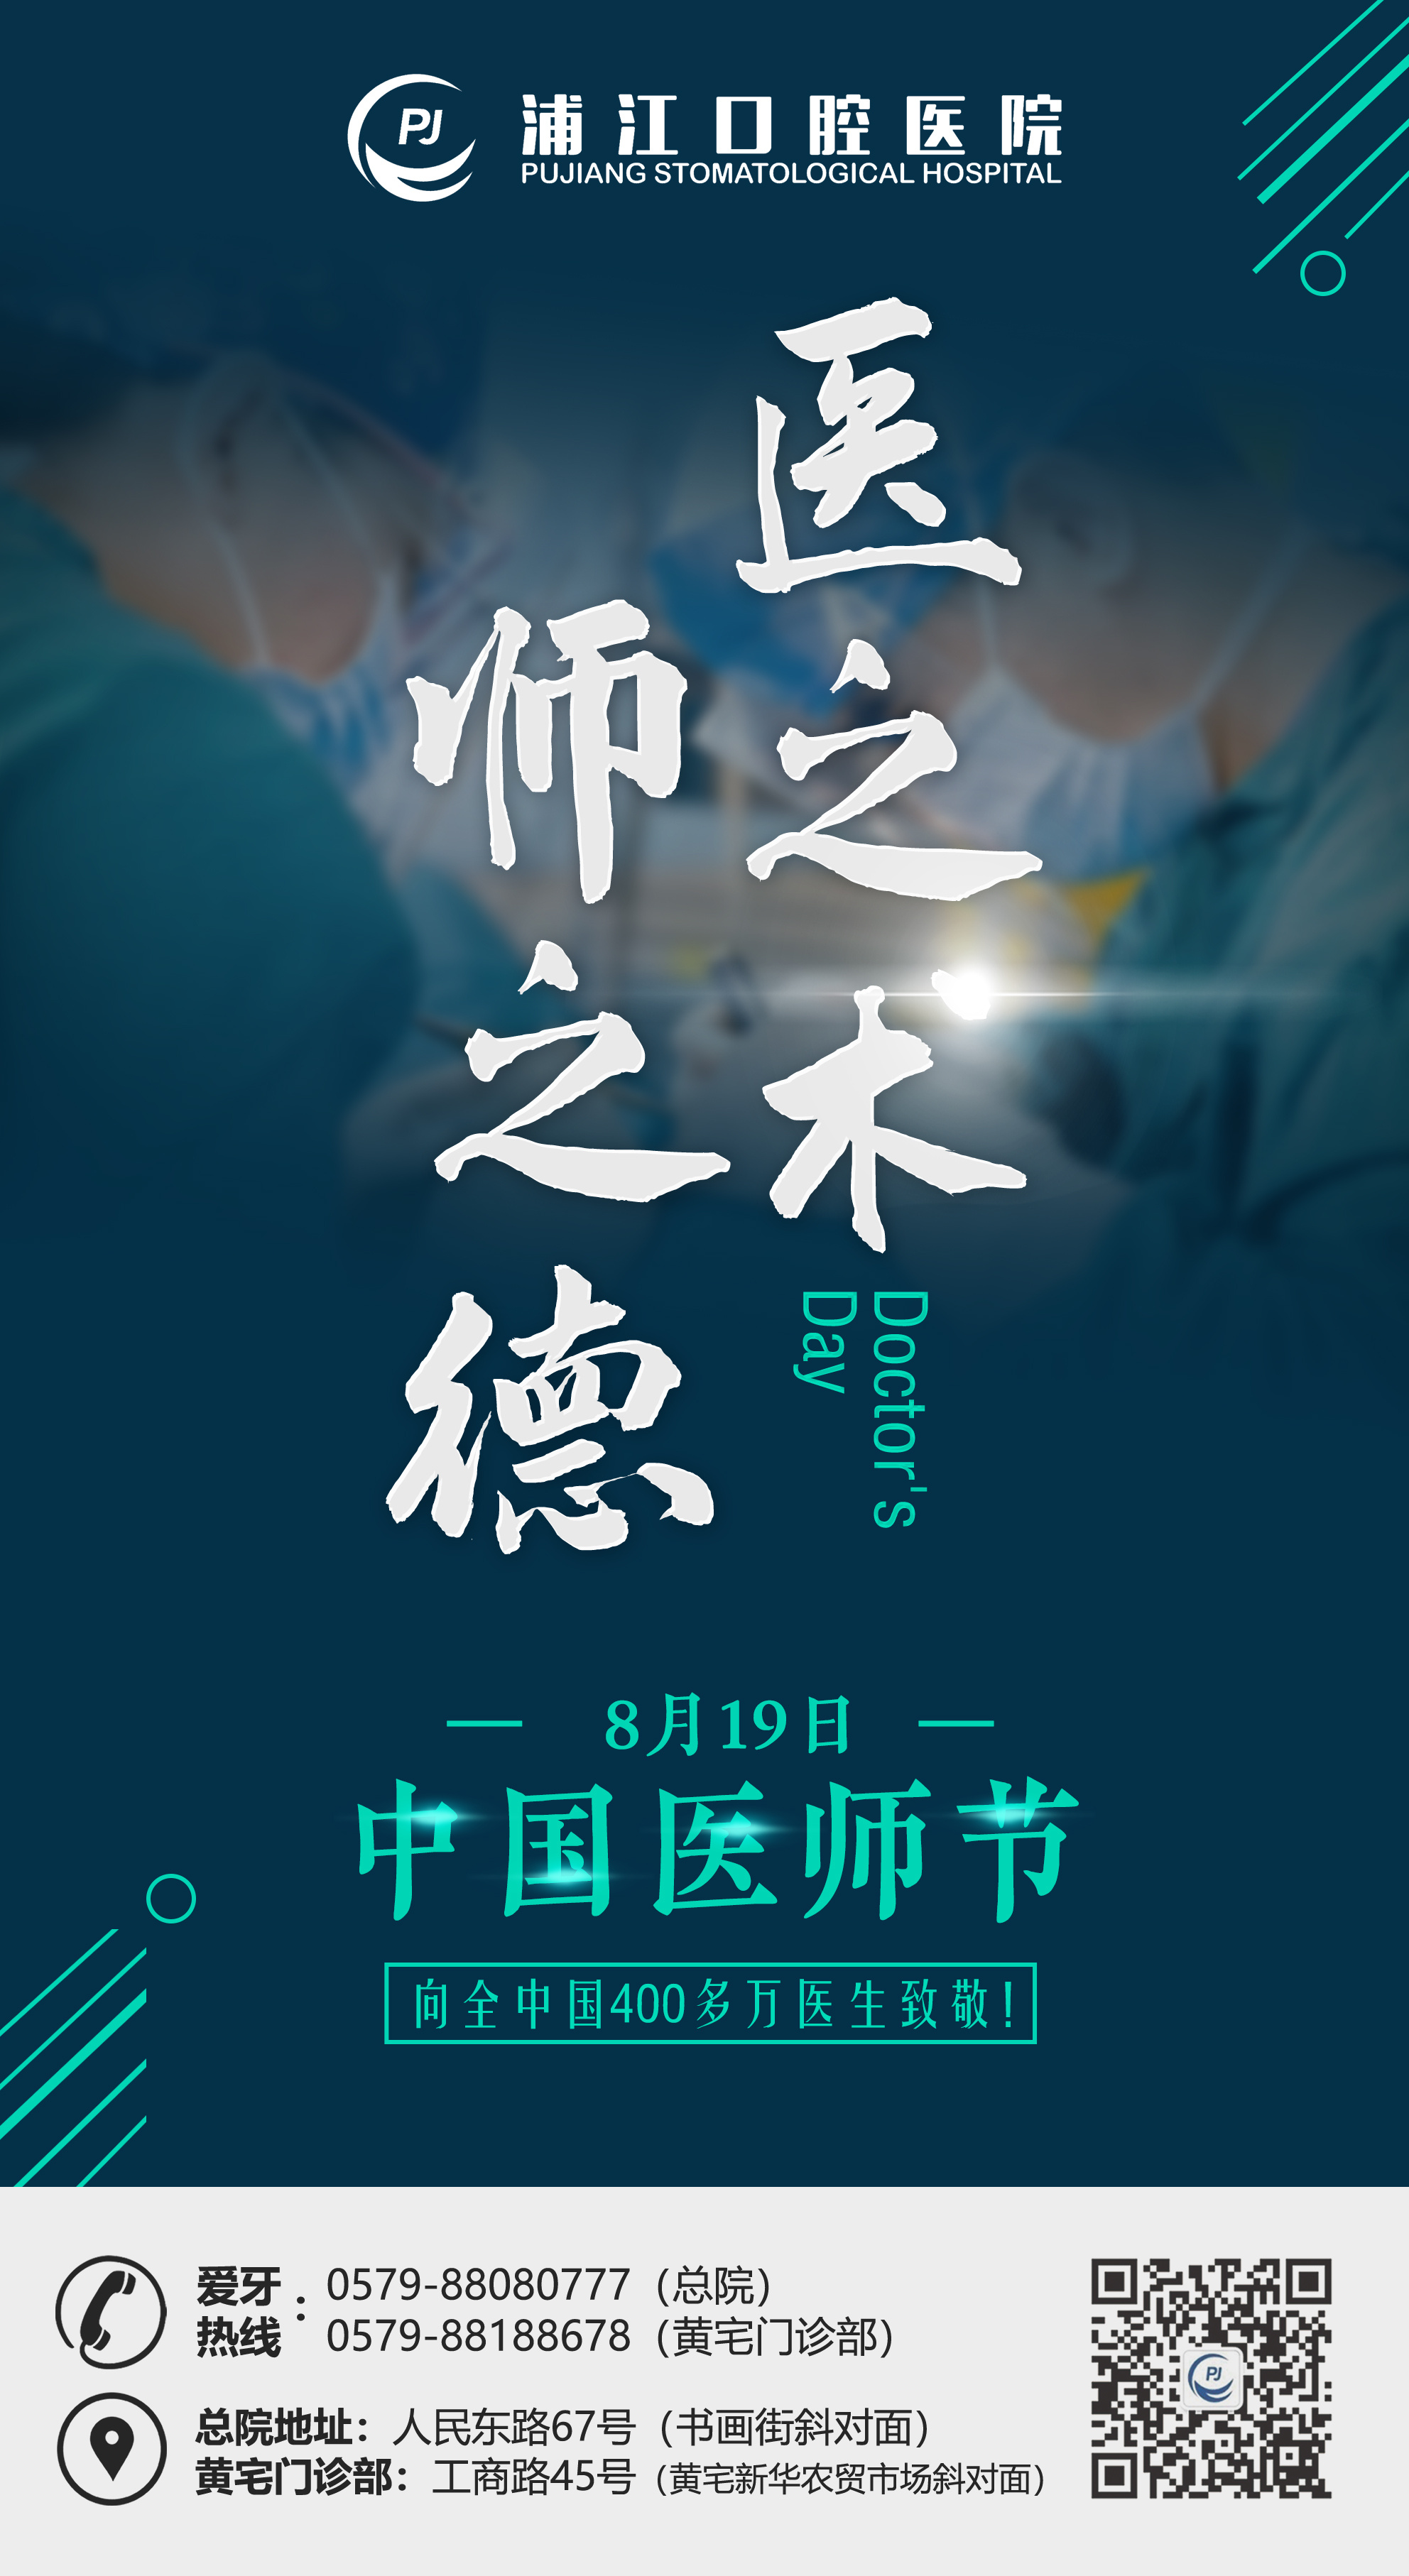 中国医师节2021年主题图片